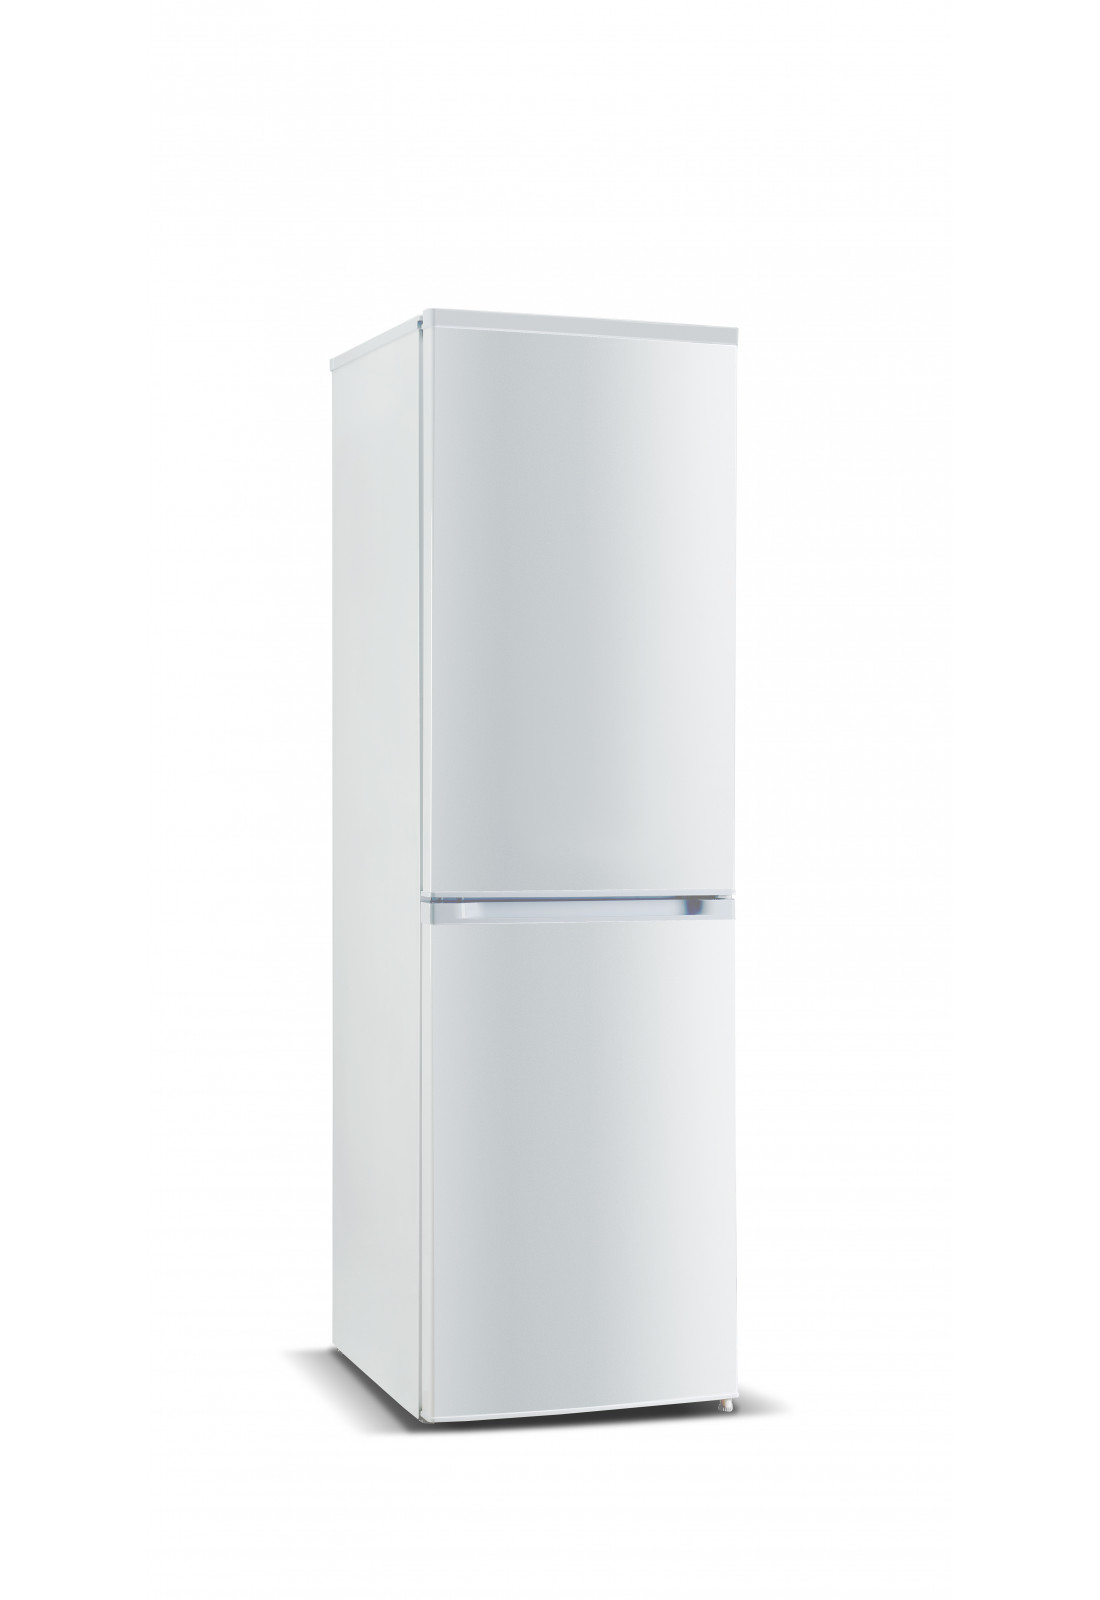 Дверь холодильной камеры холодильника NORD HR 239 S